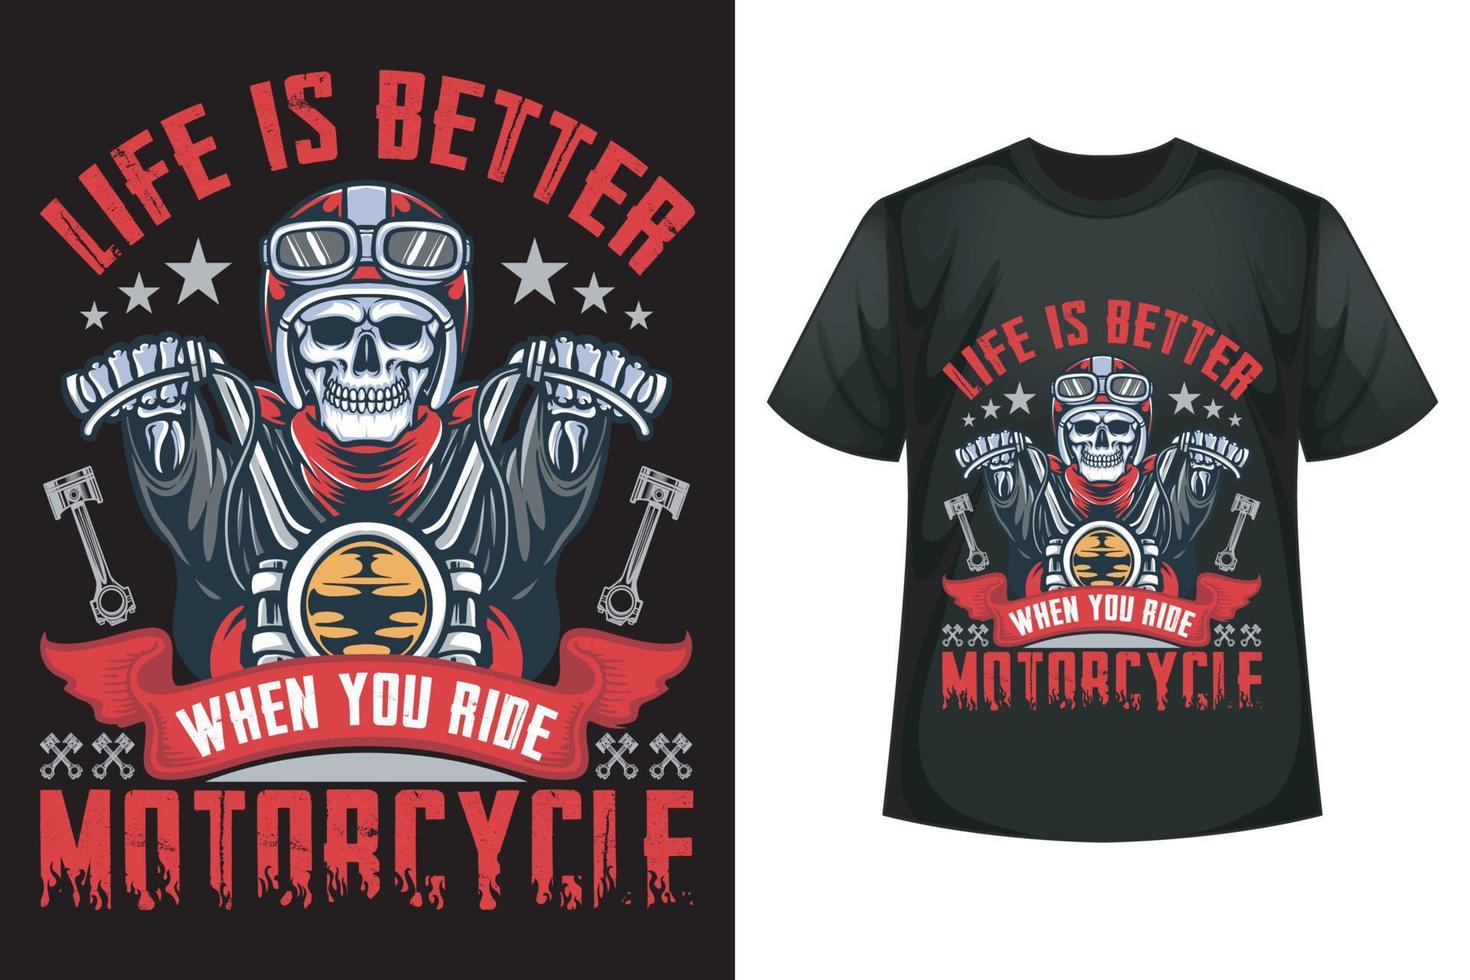 liv är bättre när du rida motorcykel - ridning t-shirt design mall vektor